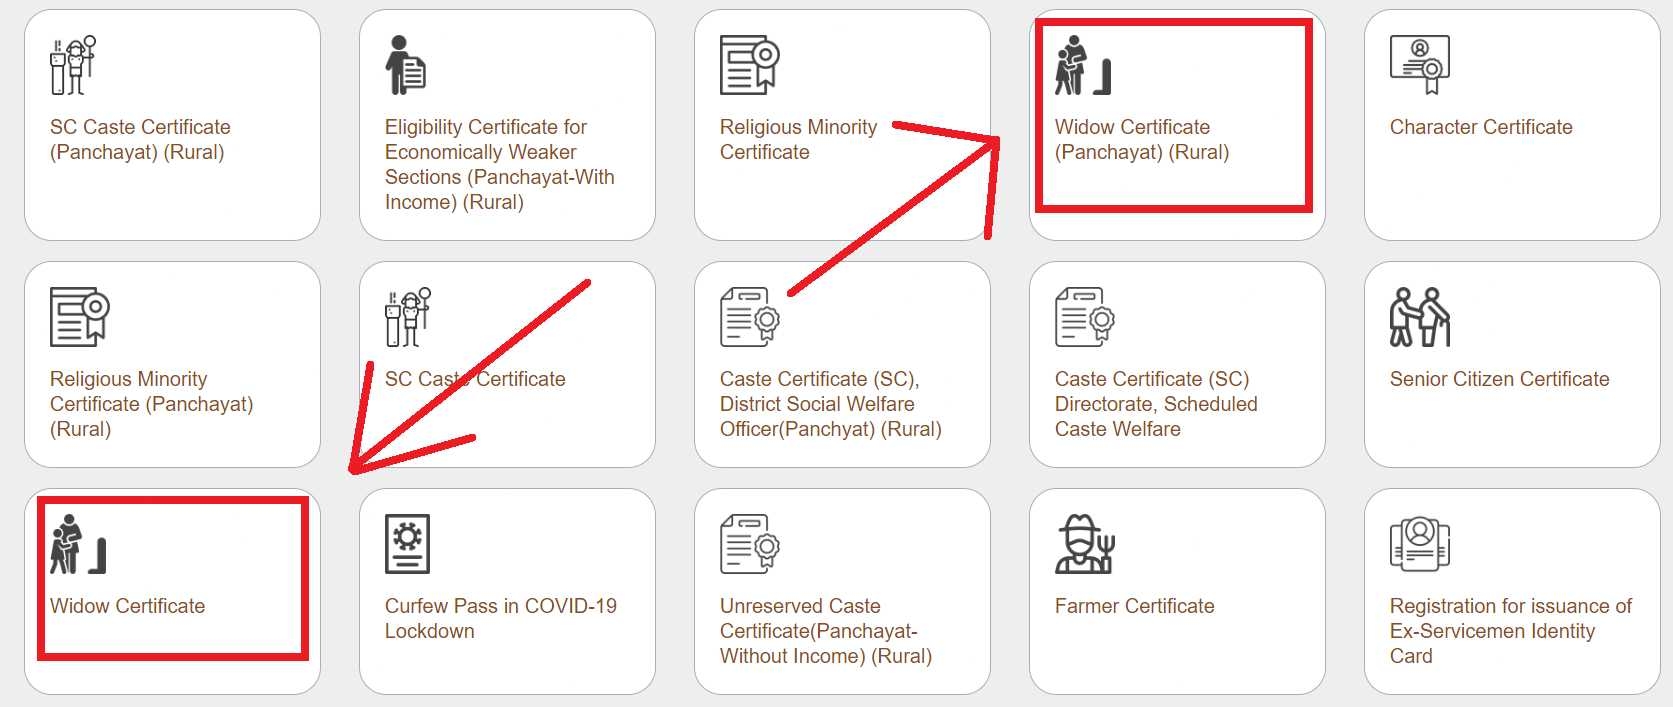 Apply online for widow certificate Surat